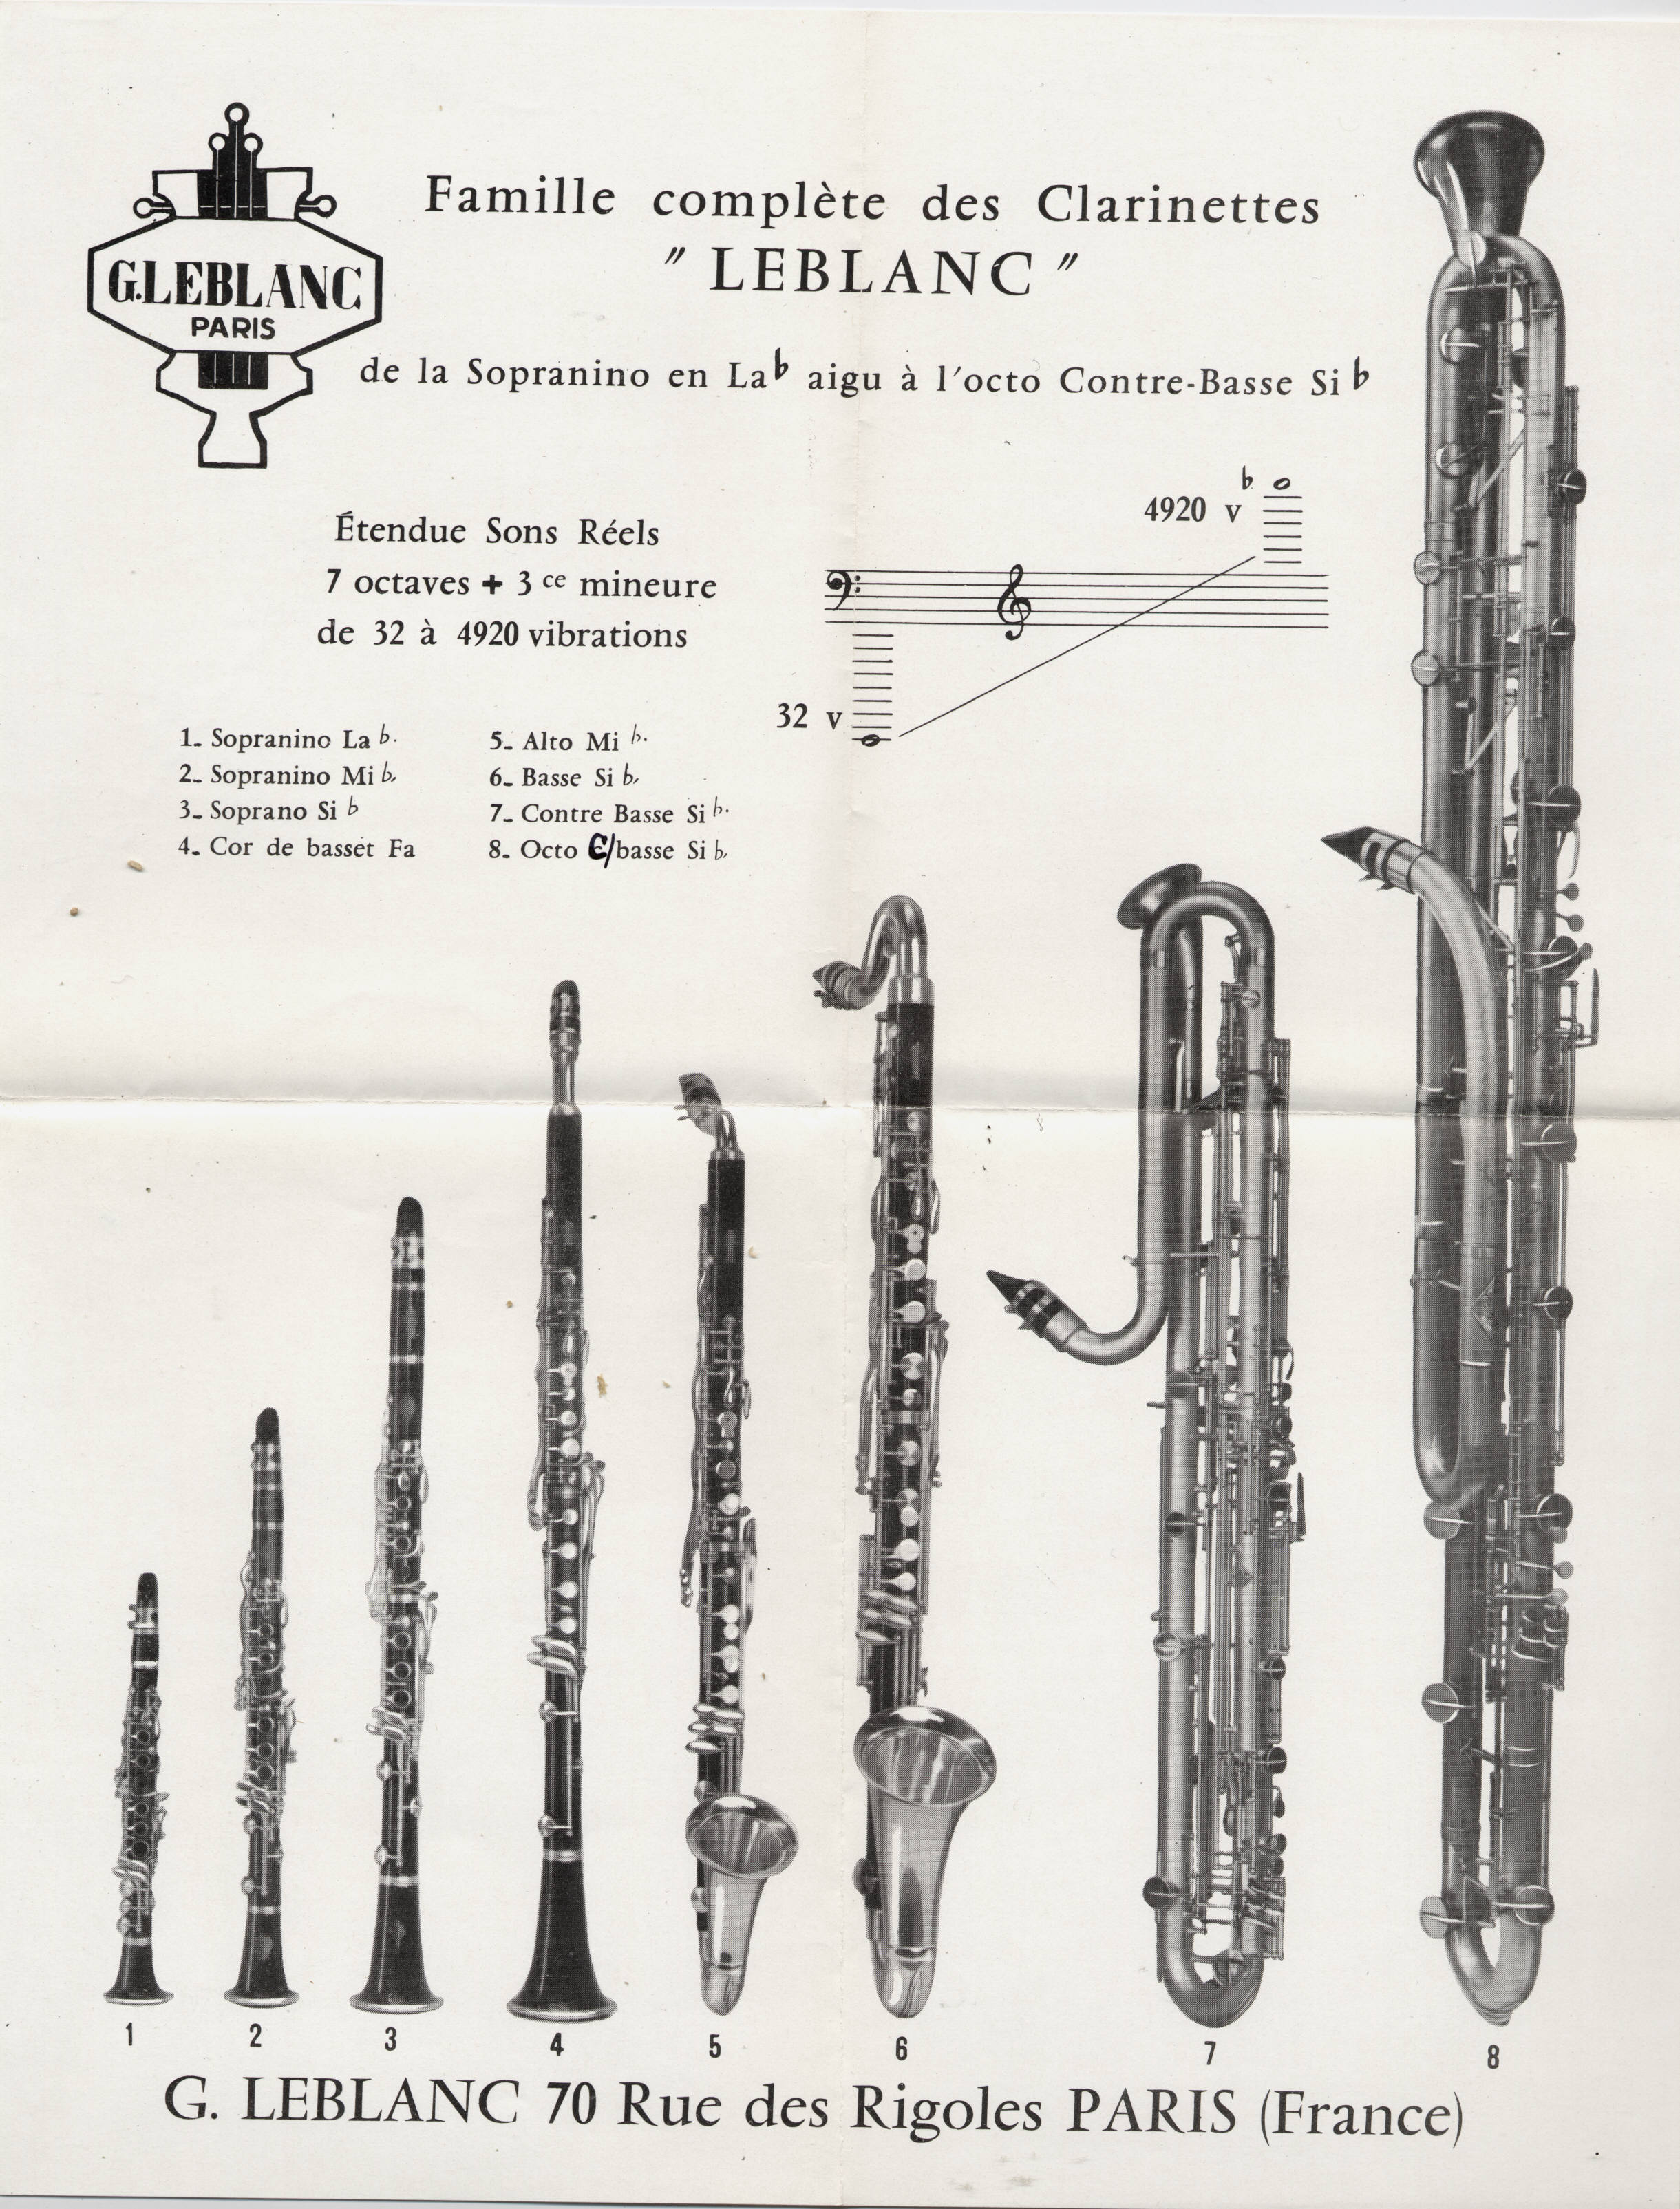 Valentin cases : Affiche famille des clarinettes leblanc de la sopranino à l'octocontrebasse